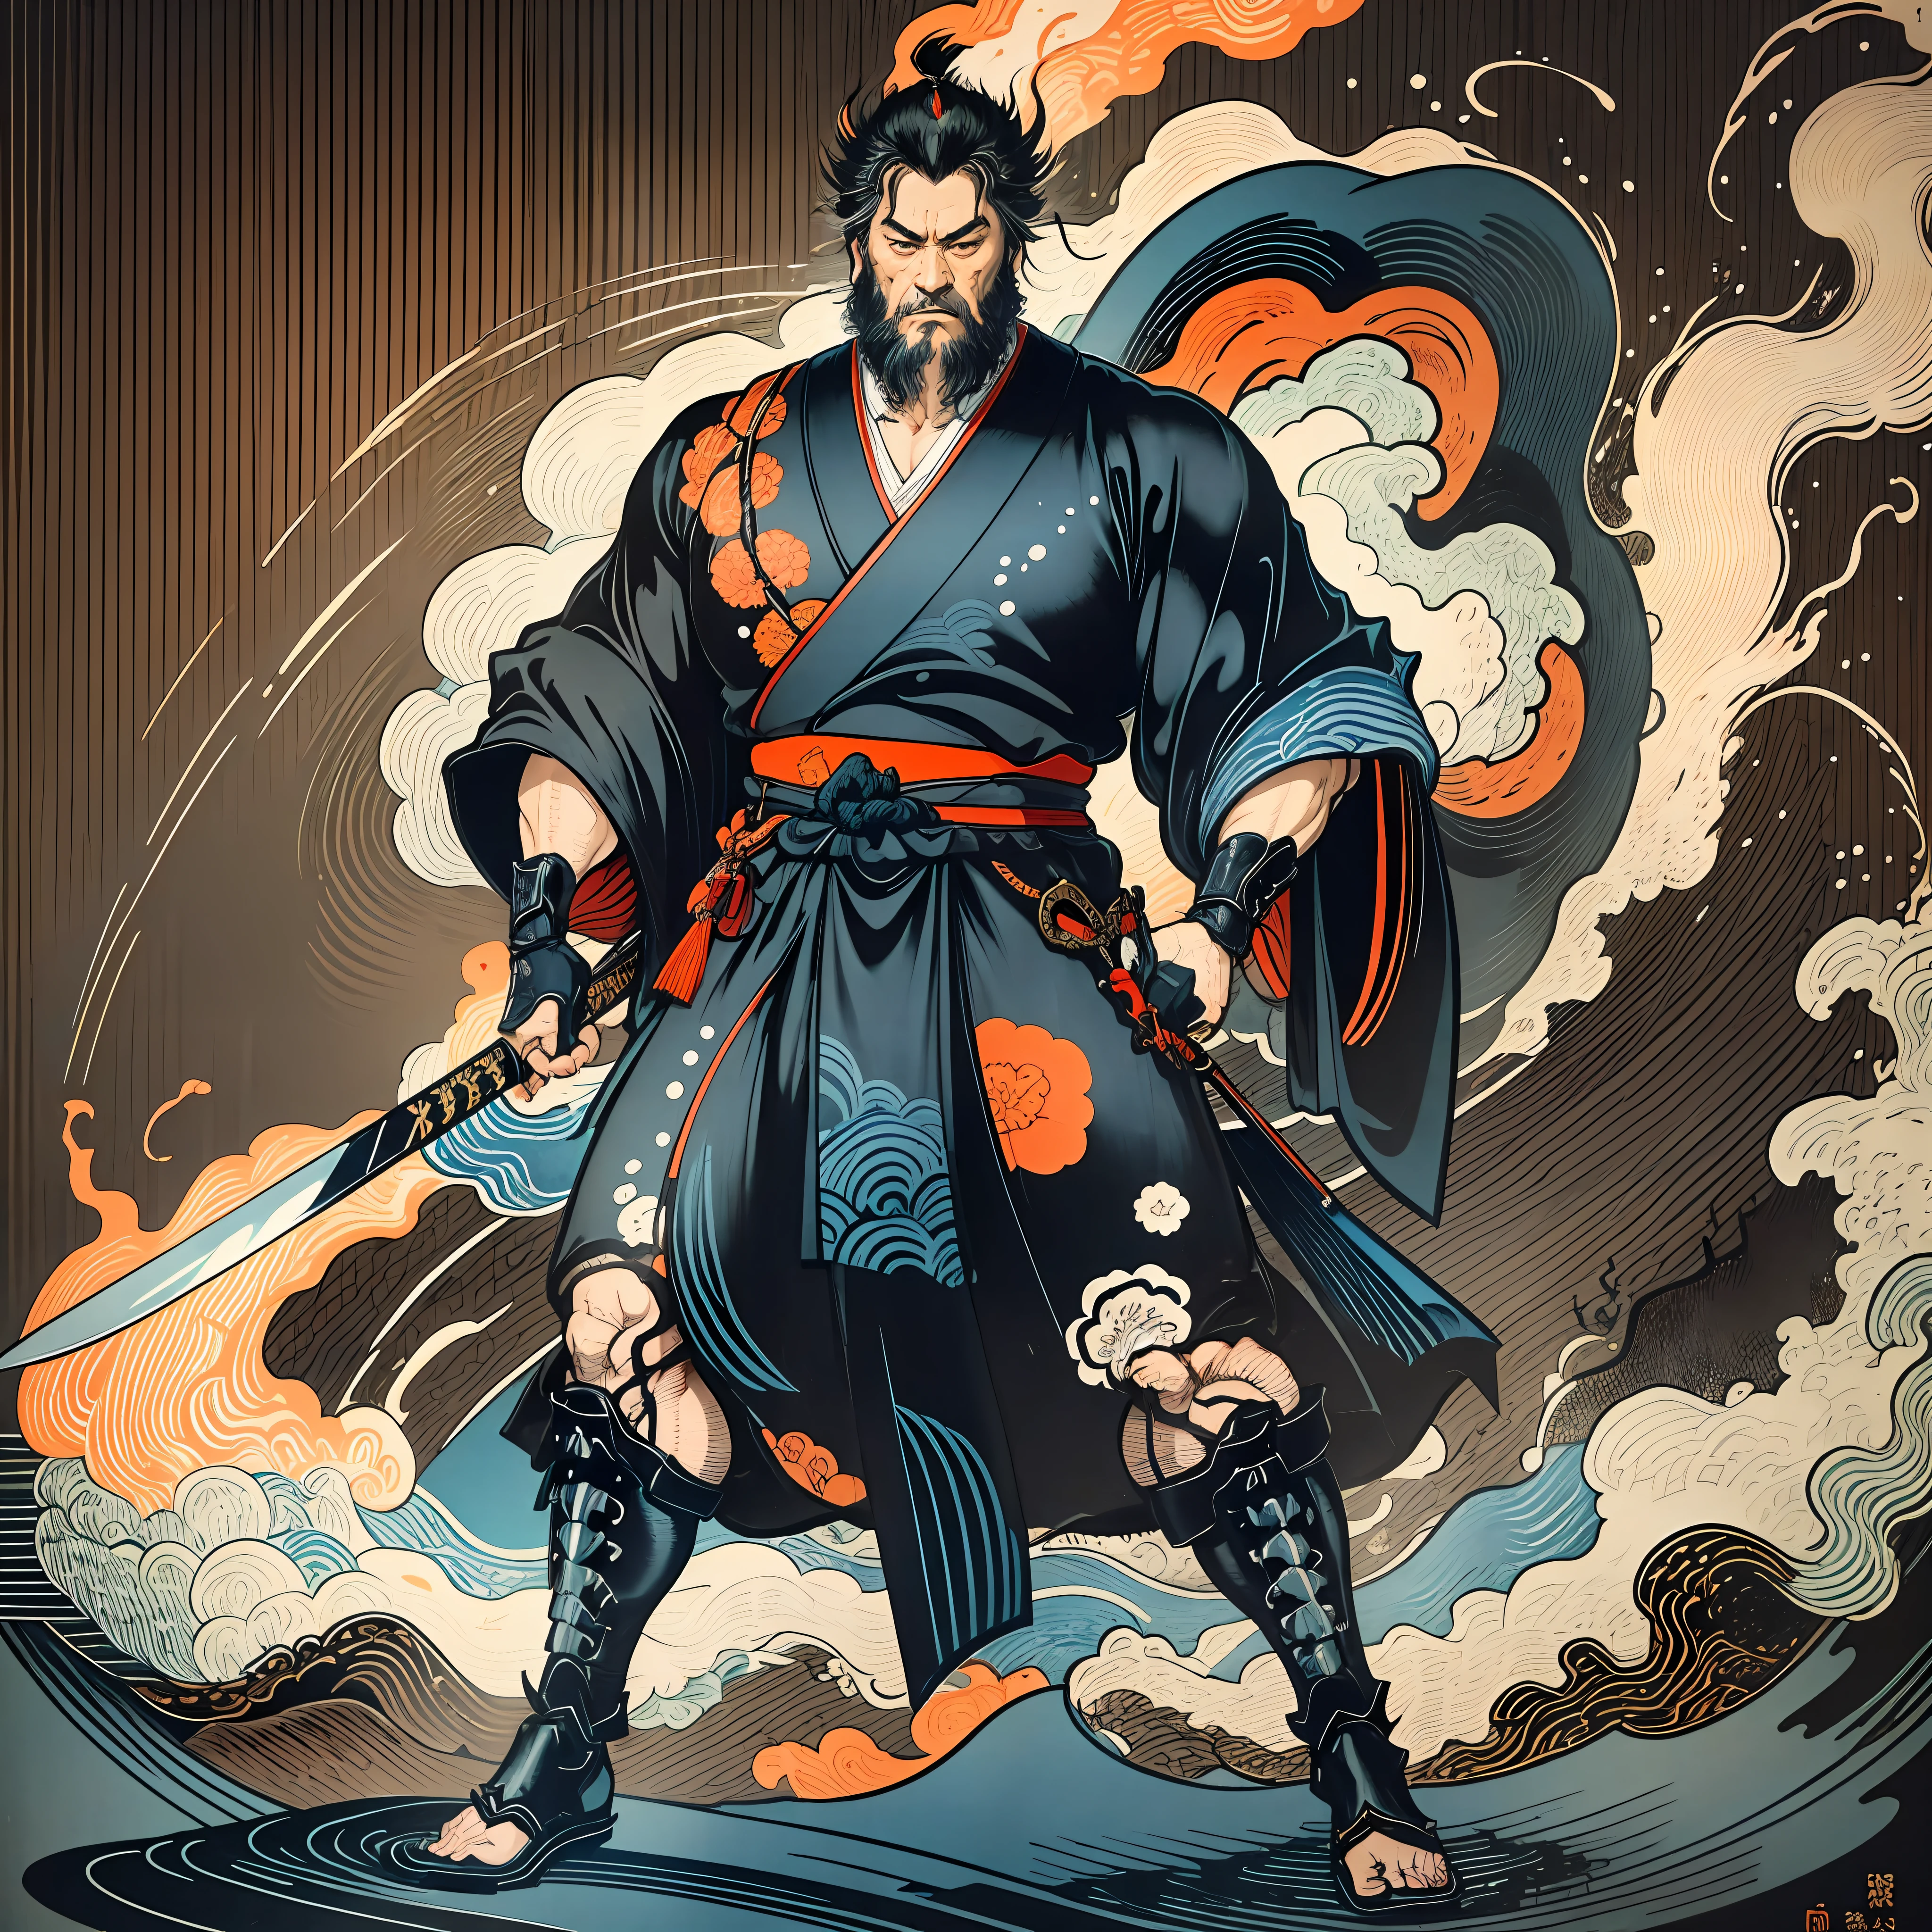 Il s&#39;agit d&#39;une peinture corporelle complète aux couleurs naturelles avec des dessins au trait de style Katsushika Hokusai.. L&#39;épéiste Miyamoto Musashi a un grand corps comme un homme fort. Samouraï du Japon. Il a une expression de détermination digne mais virile, Les cheveux cours et noirs, et un court, barbe taillée. Le haut de son corps est recouvert d&#39;un kimono noir et son hakama arrive jusqu&#39;aux genoux.. Dans sa main droite, il tient une épée japonaise. Dans la plus haute qualité, dans les éclairs et les flammes tourbillonnantes de style ukiyo-e haute résolution du chef-d&#39;œuvre. Miyamoto Musashi se tient debout, le visage et le corps tournés vers l&#39;avant., il a le dos droit.